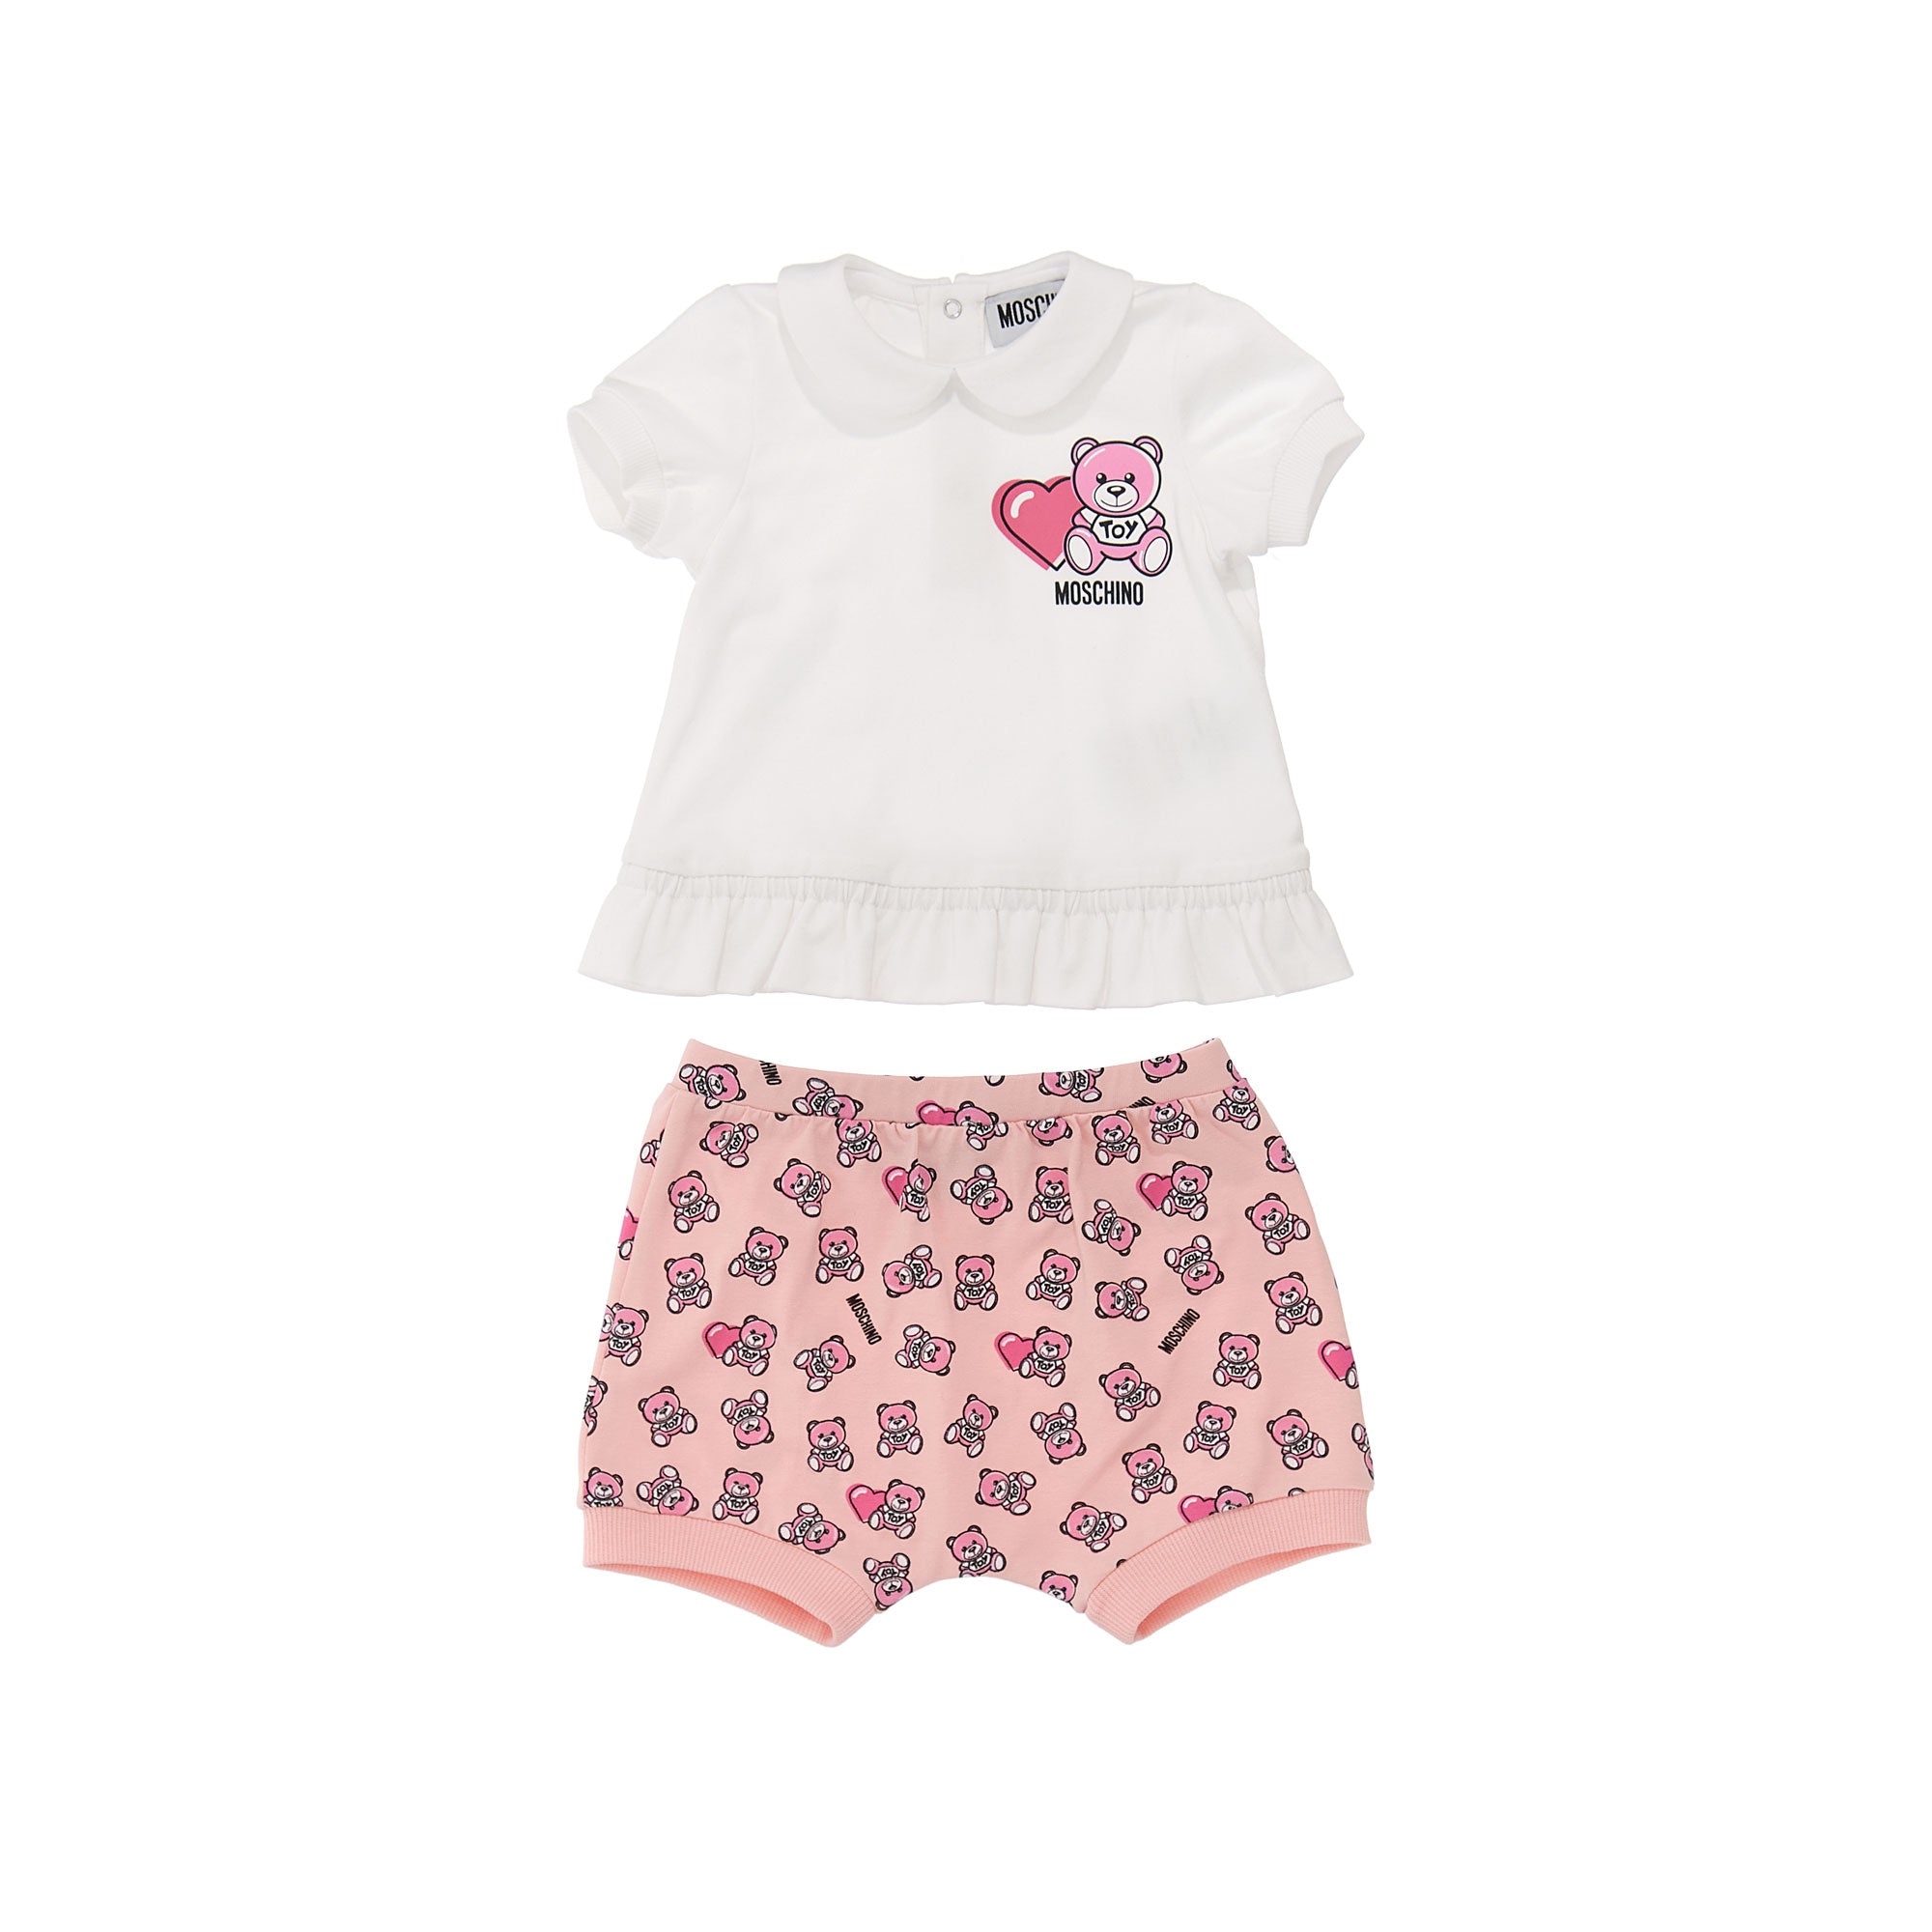 Baby Girls White & Pink Cotton Set